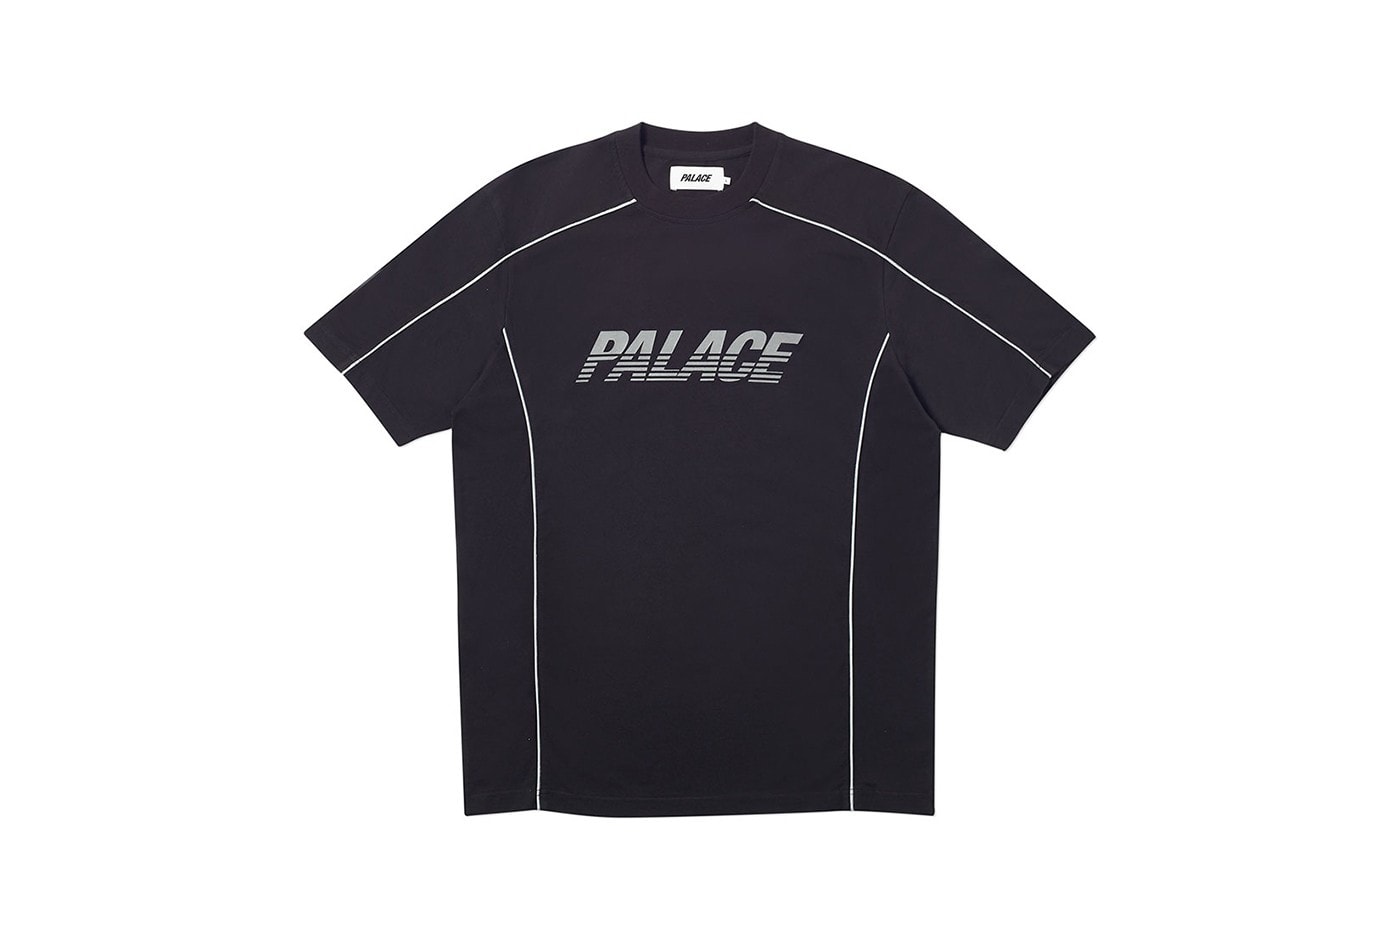 Palace 正式發佈 2019 秋季上衣系列